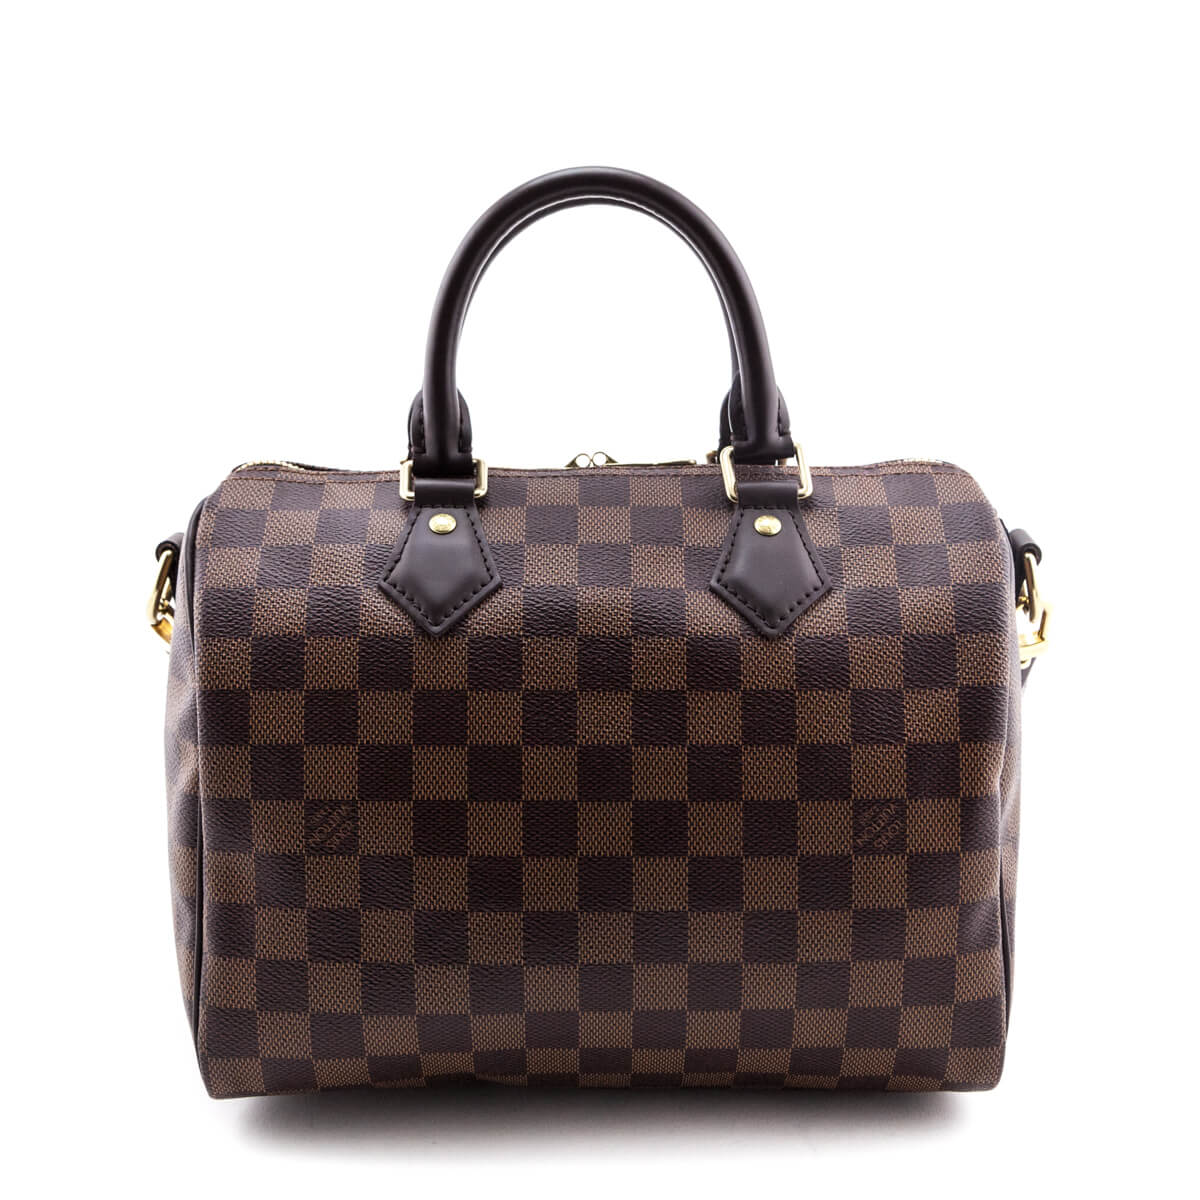 Louis Vuitton Damier Ebene Speedy Bandouliere 25 - LV Handbags Canada